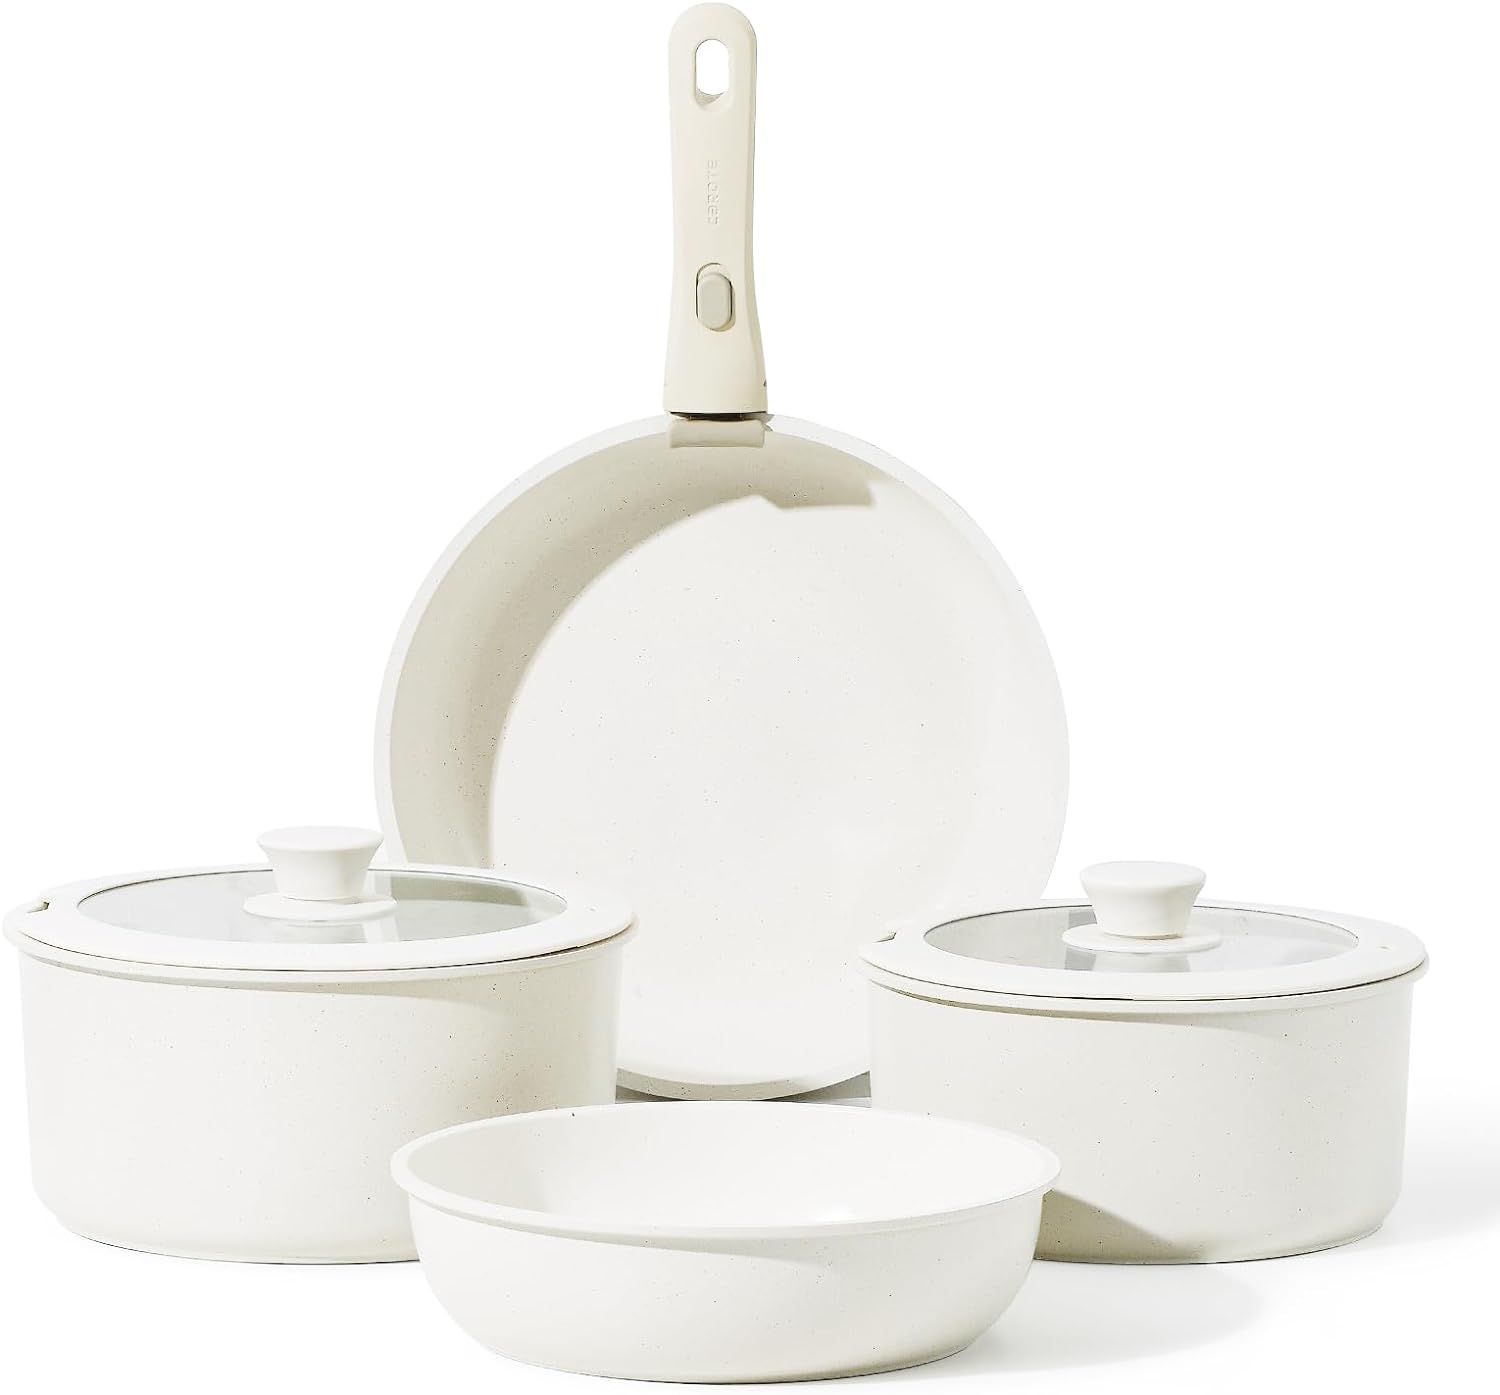 CAROTE 7pcs Pots and Pans Set, Nonstick Cookware Set Detachable Handle, Induction Kitchen Cookwar... | Amazon (US)